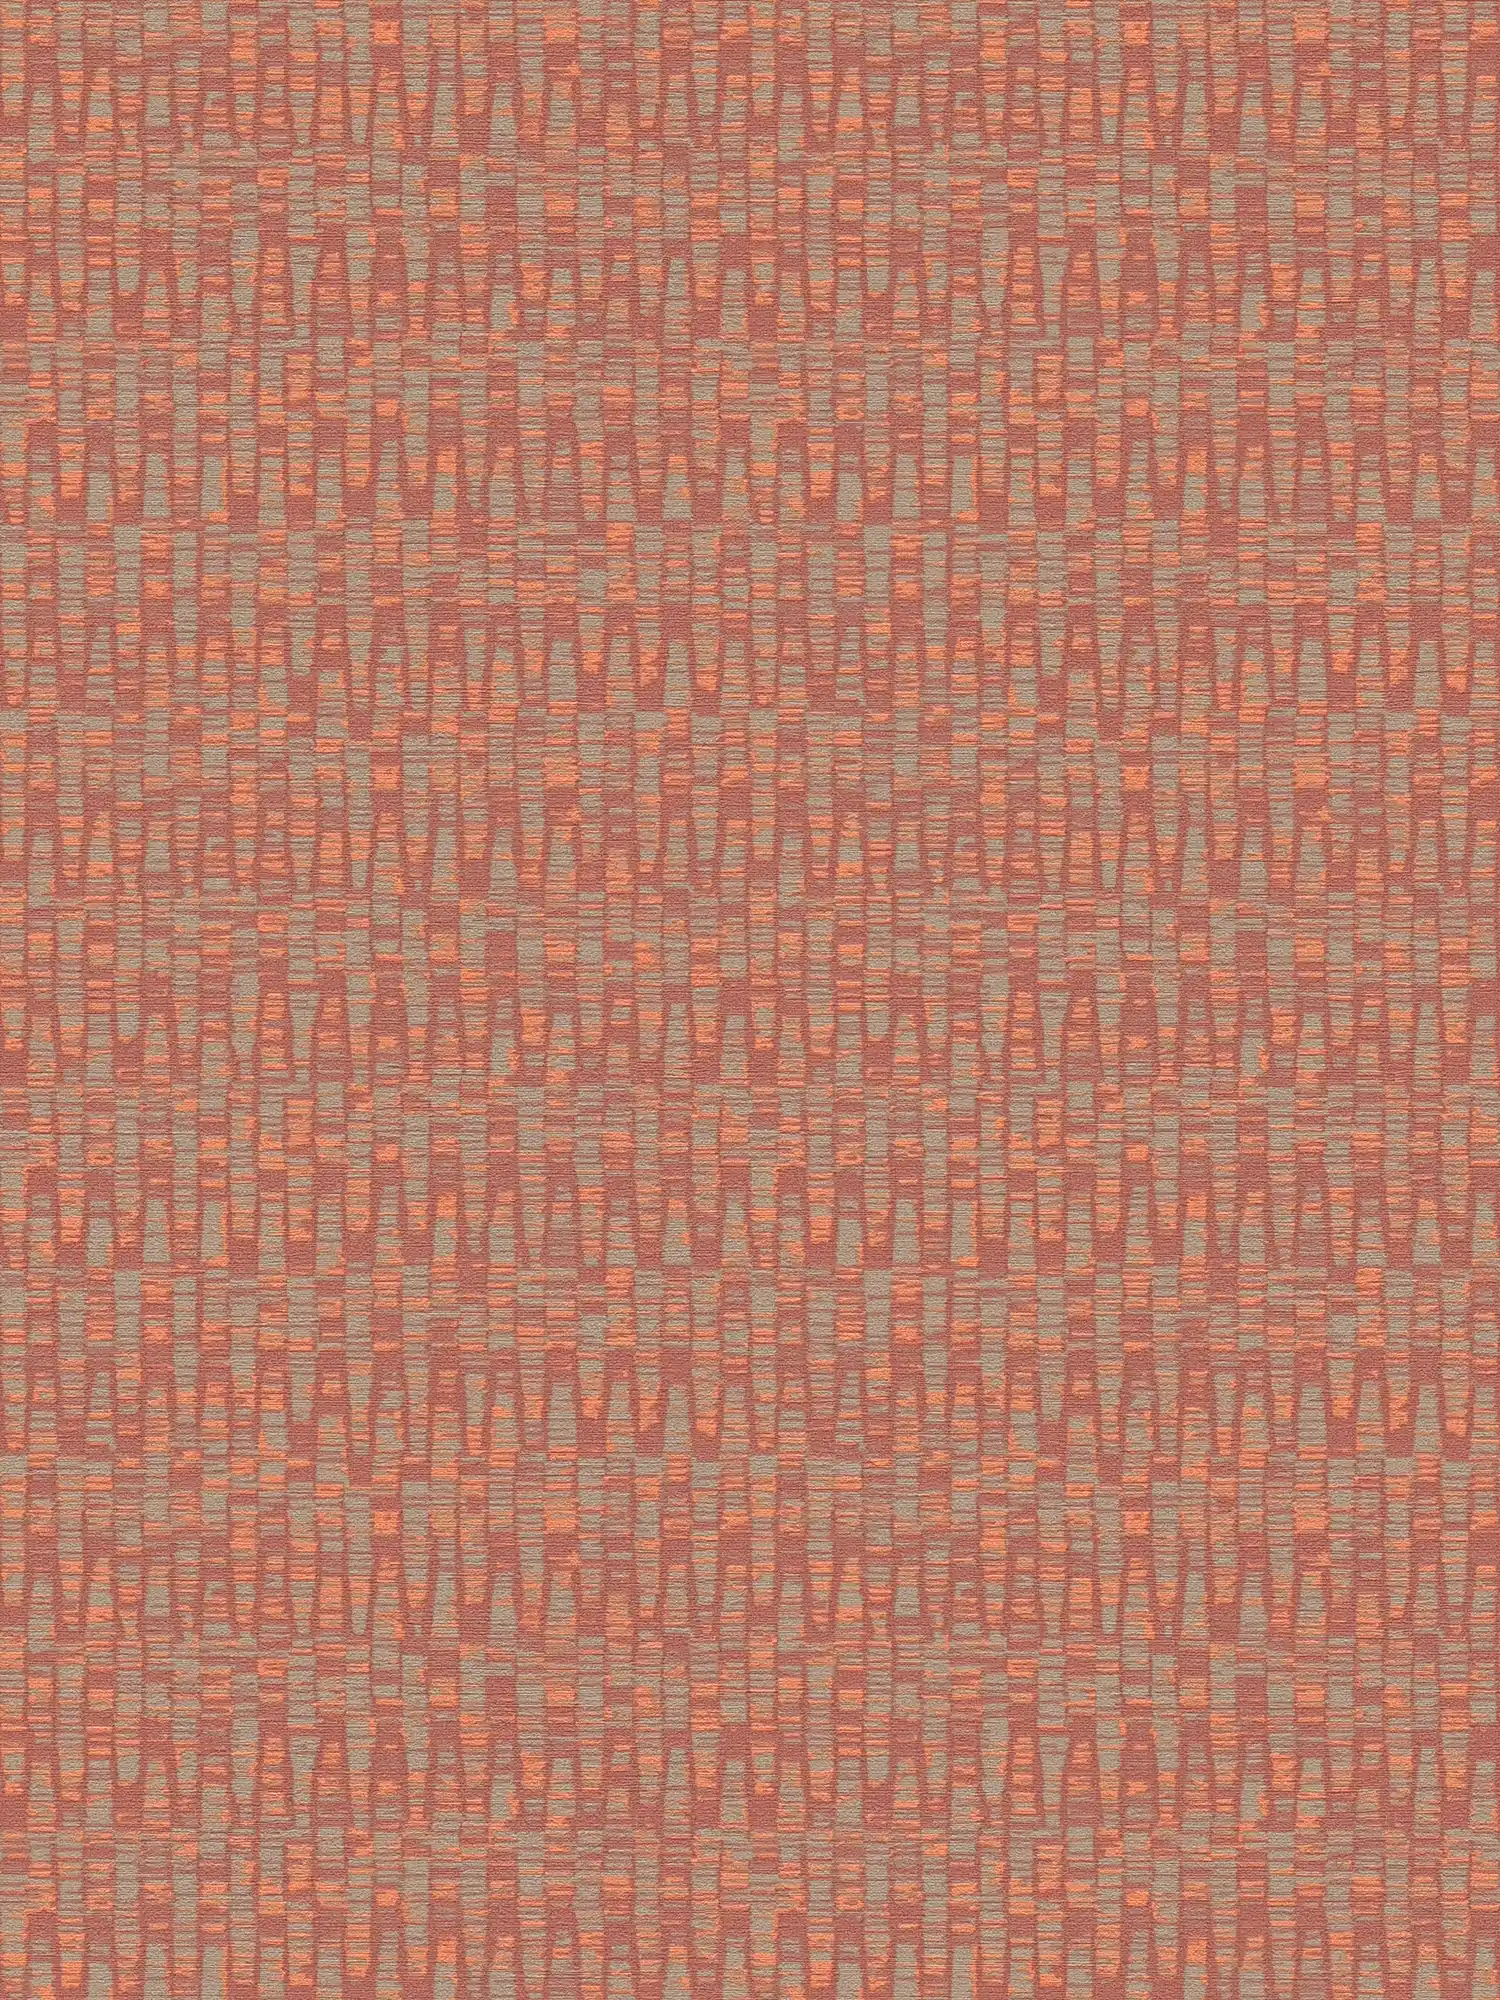 Papier peint intissé aux couleurs vives - rouge, orange, gris
